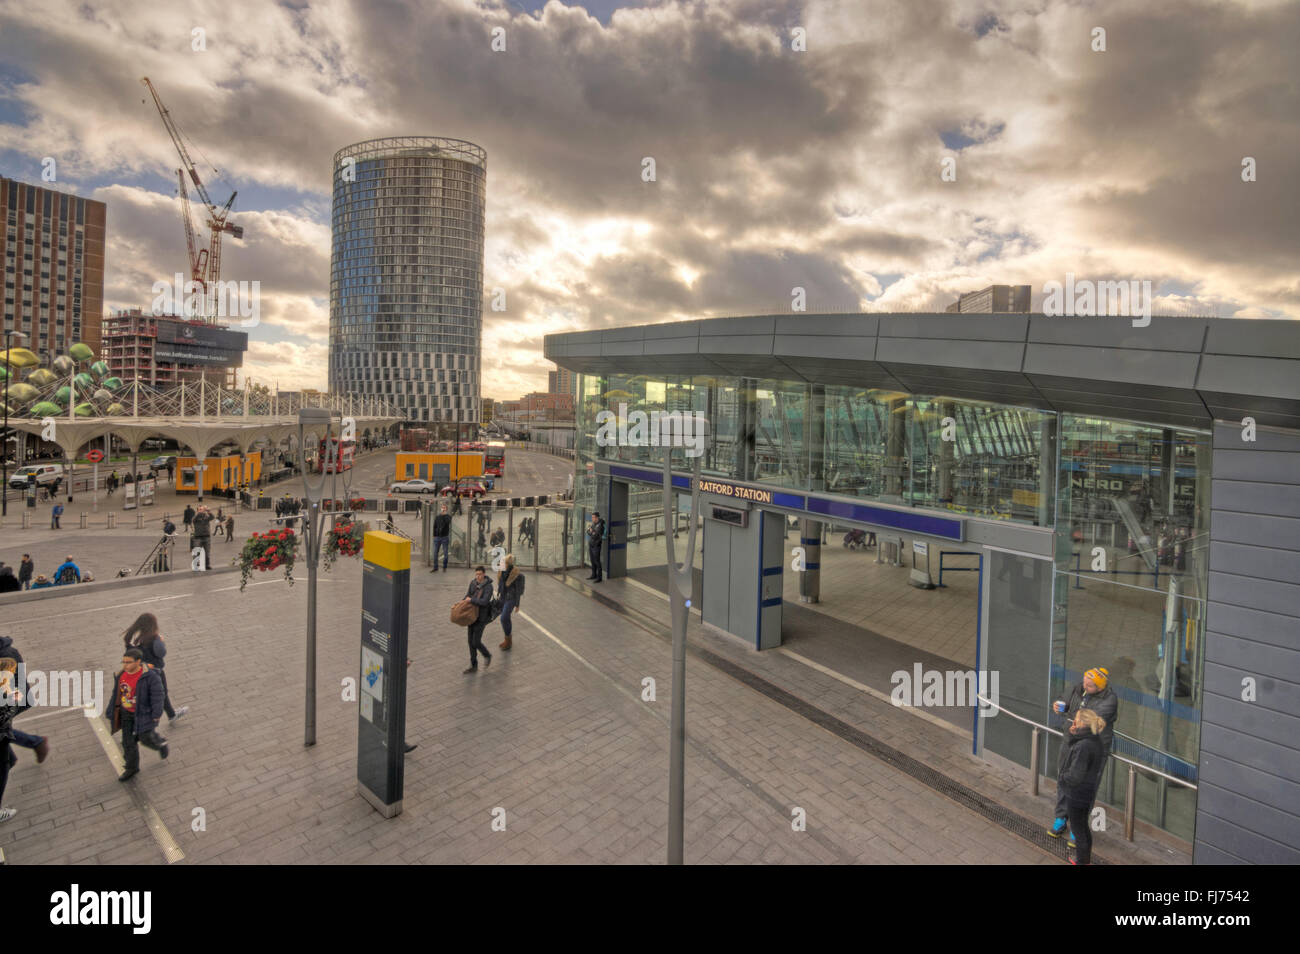 La stazione di Stratford, Londra. Stazione moderna Foto Stock